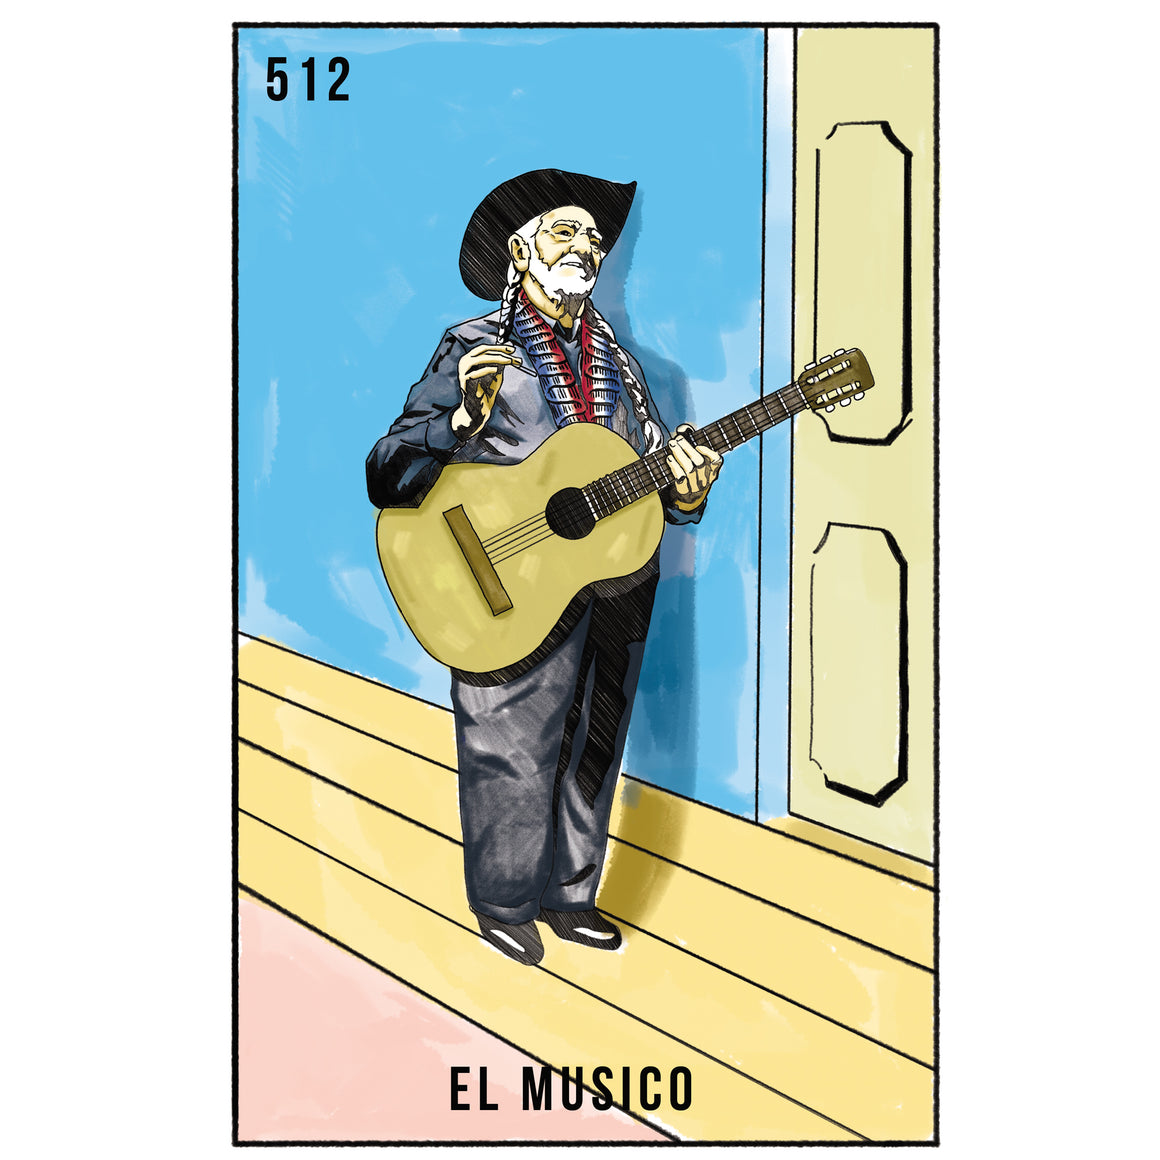 El Musico (De Austin) - Fabian Puente